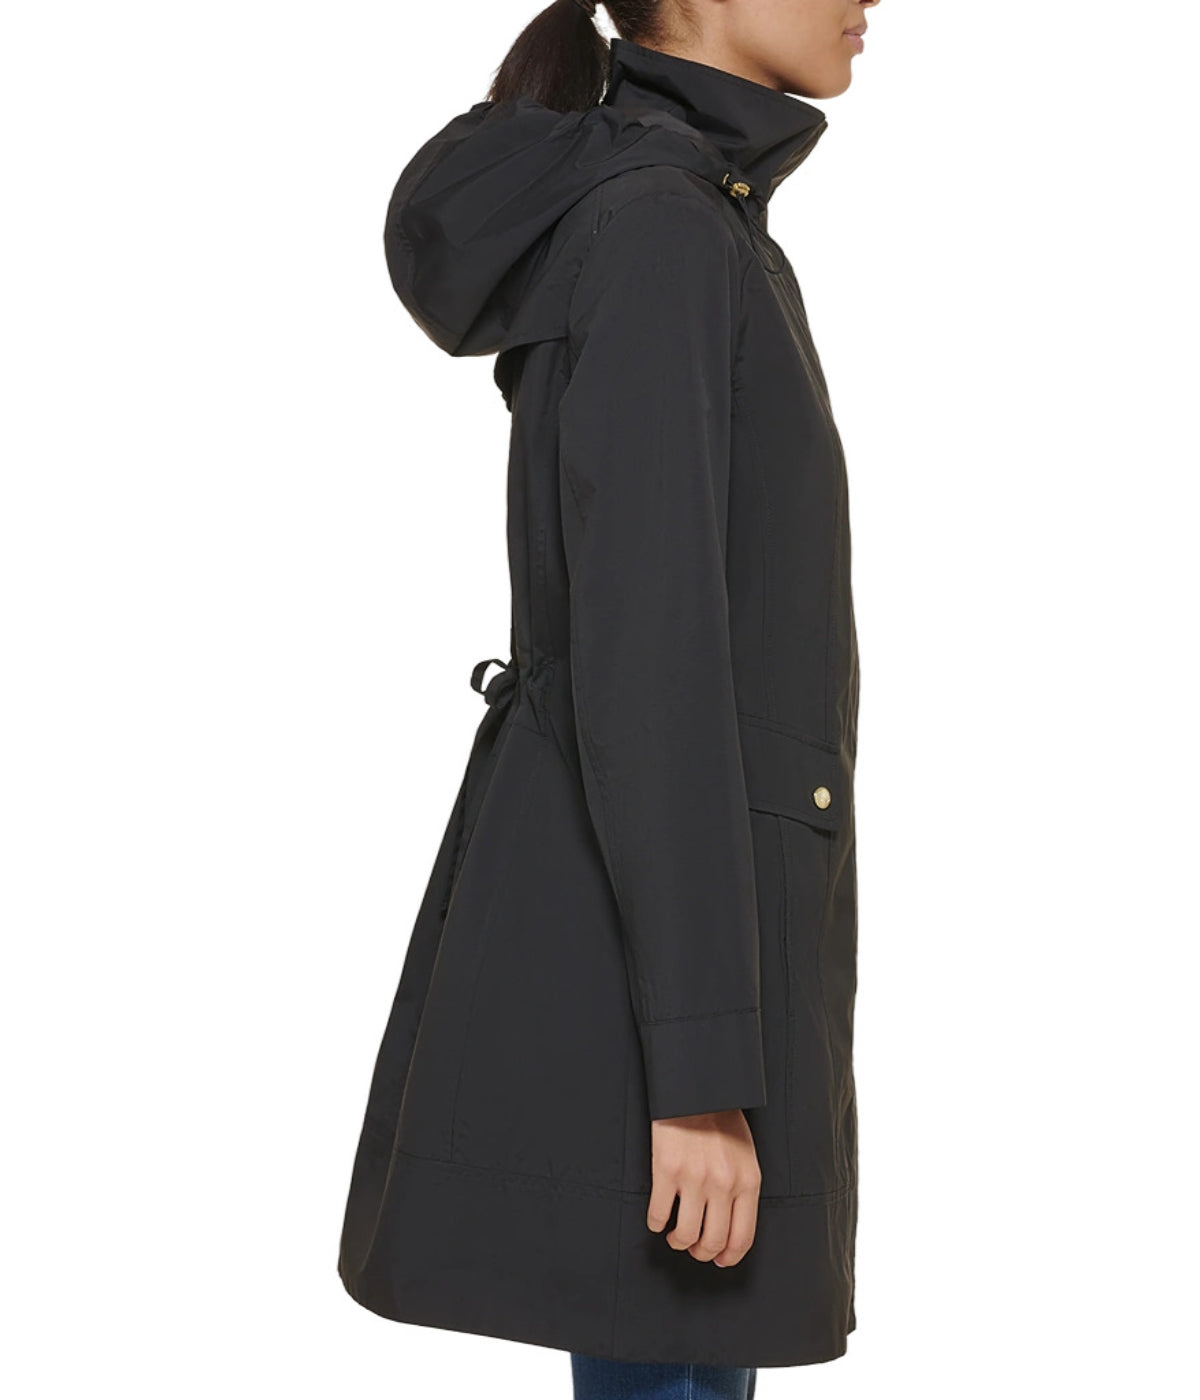 Packable Hooded Anorak Raincoat Black